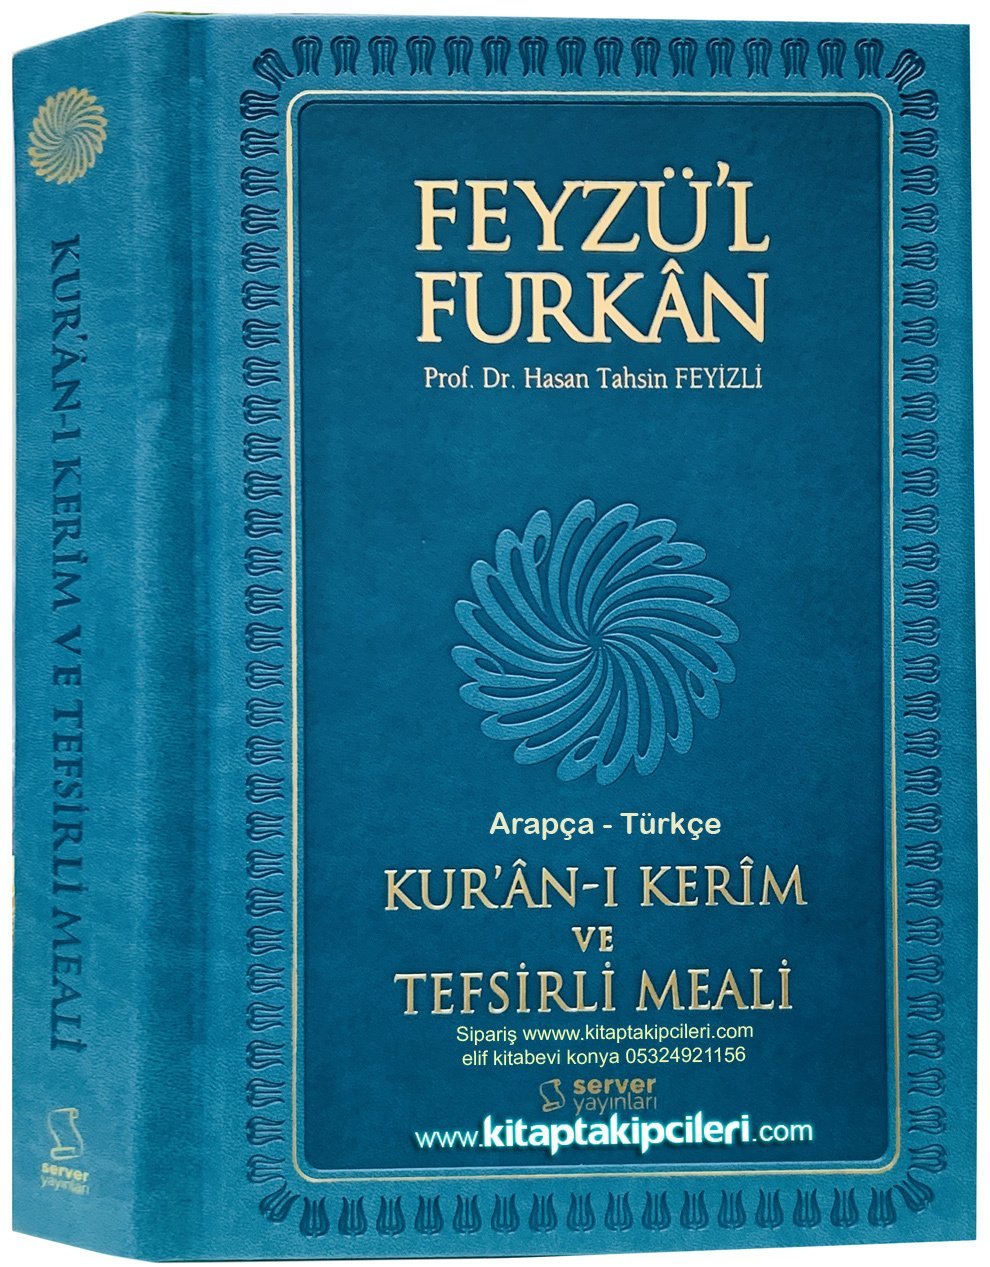 Feyzül Furkan Kuranı Kerim Ve Tefsirli Meali, Hasan Tahsin Feyizli, Arapça Türkçe, Kitap Boy 14x21 cm, 1279 Sayfa